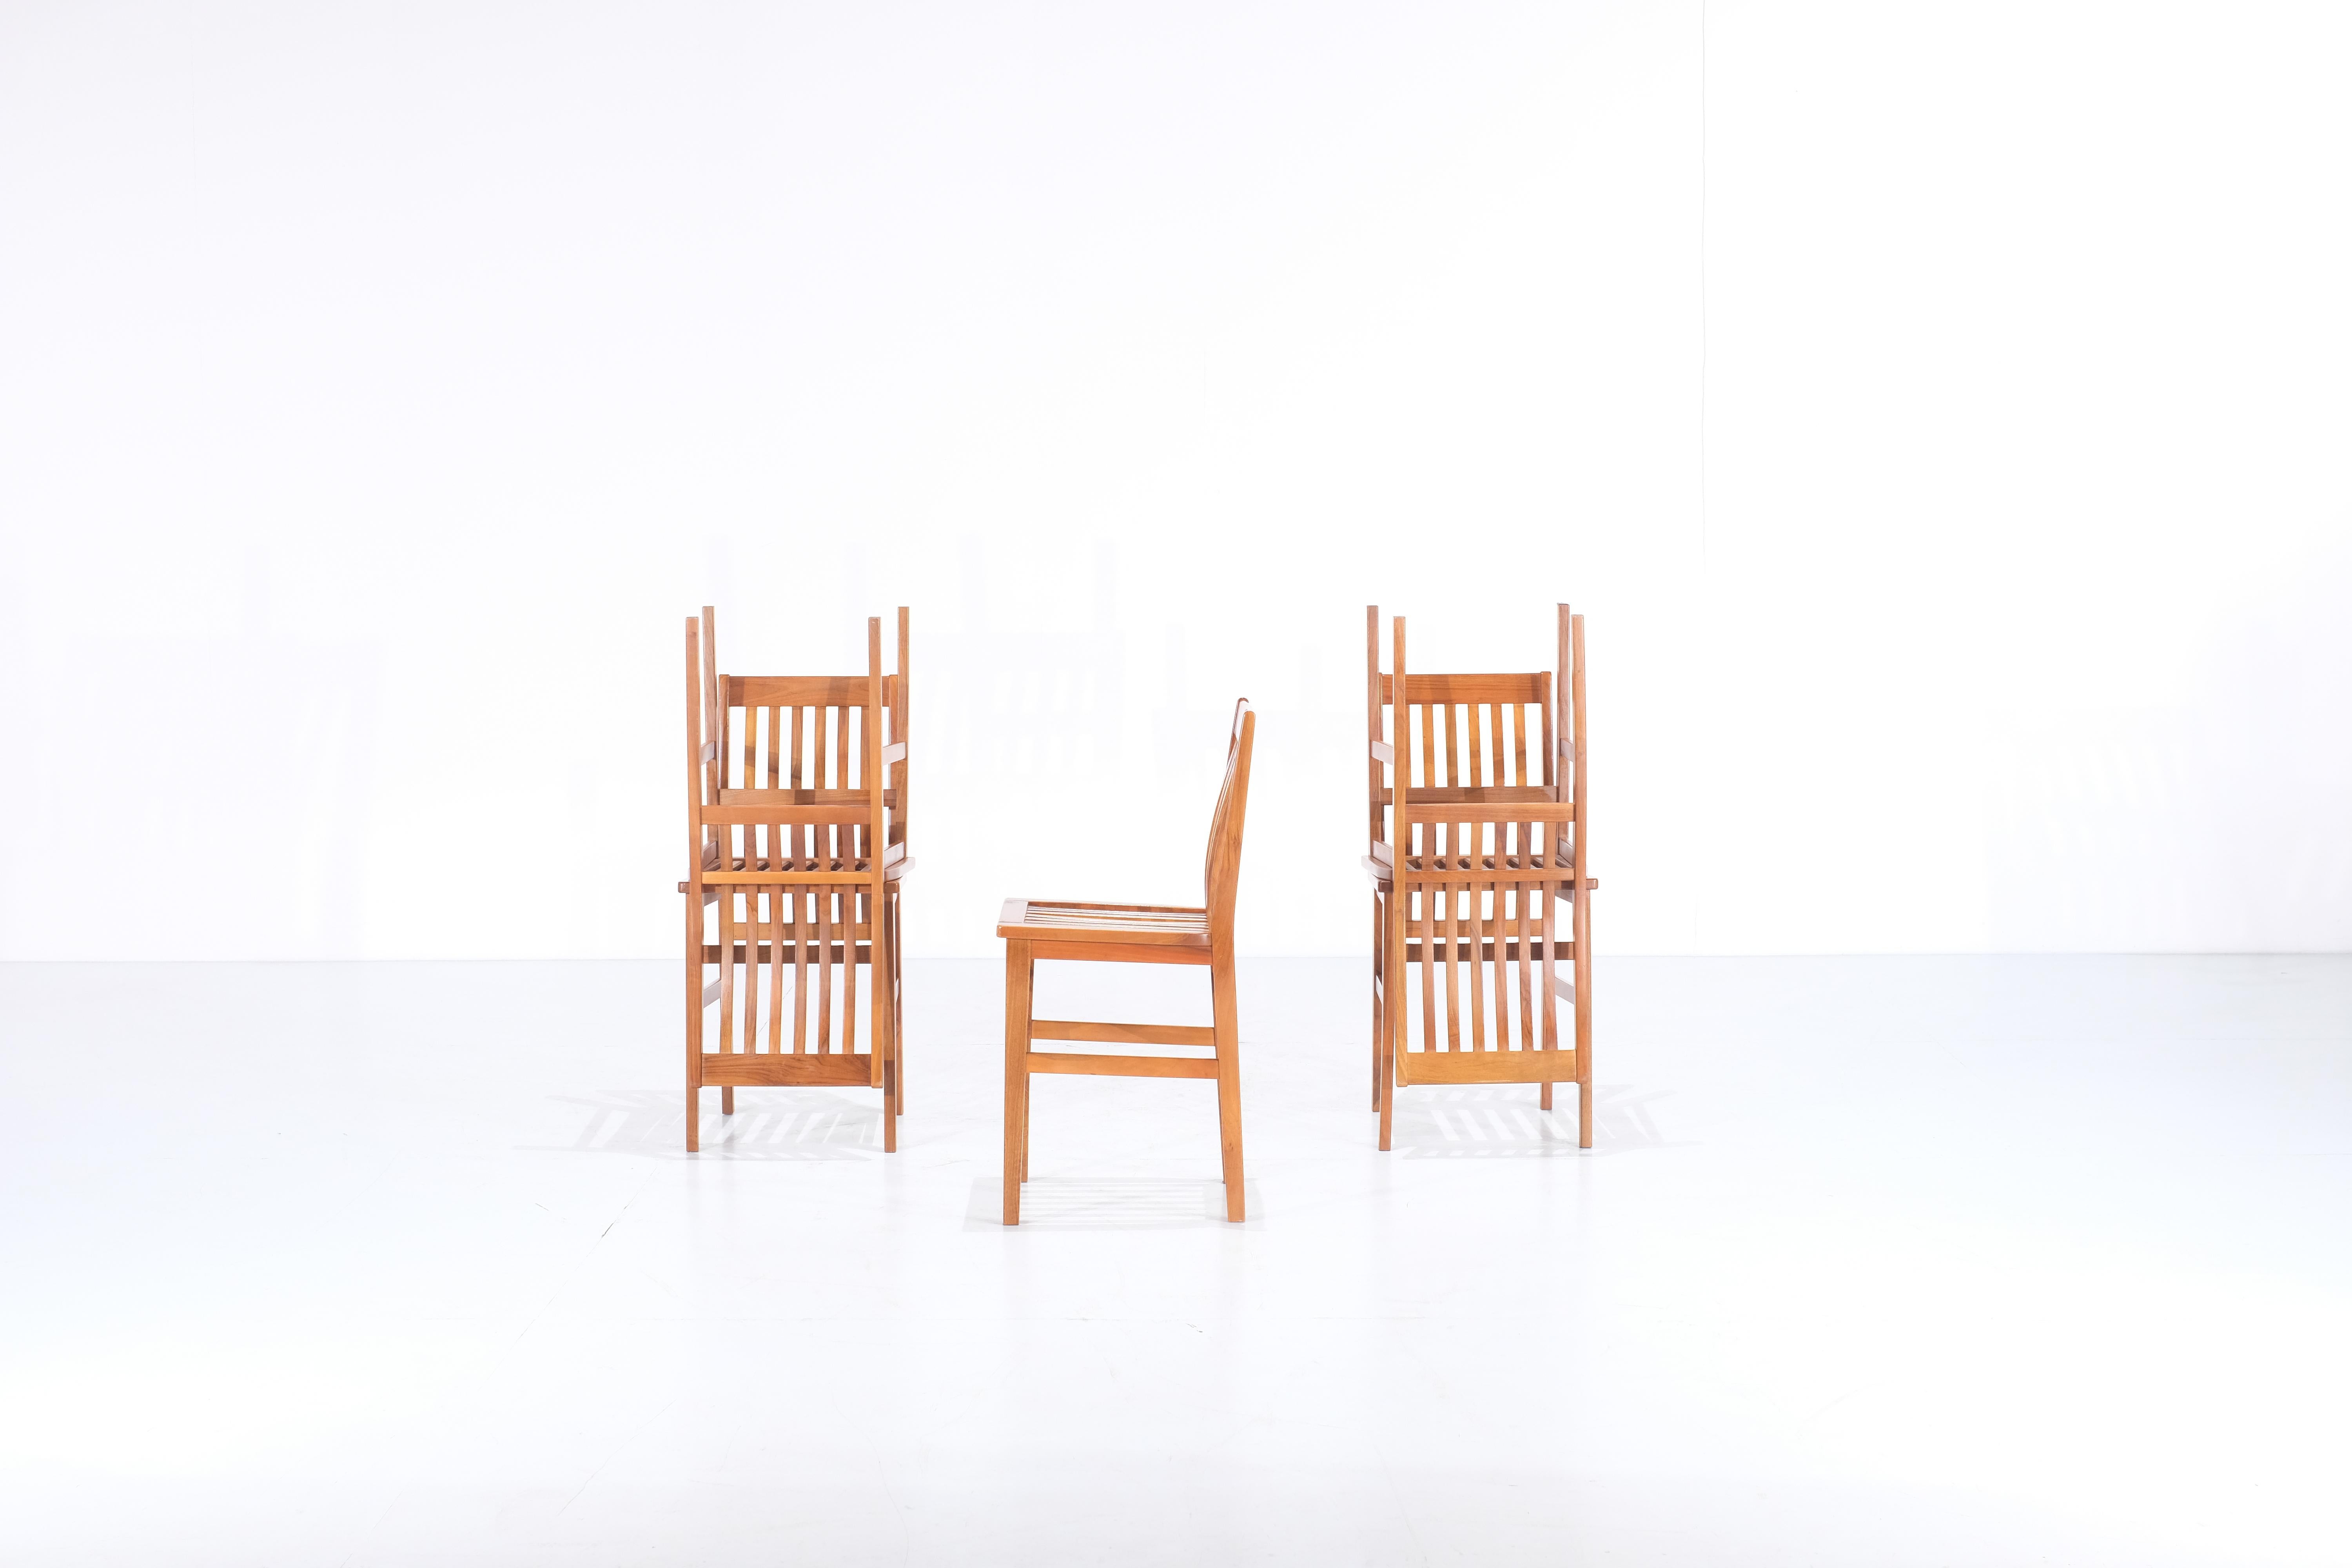 Incroyable  Ensemble de cinq chaises Milano conçues en 1987 par Aldo Rossi pour Molteni. 
Ces chaises sont très rares car elles ne sont plus produites. Ce modèle est également exposé dans la collection permanente du musée Molteni. 
 Avec ses